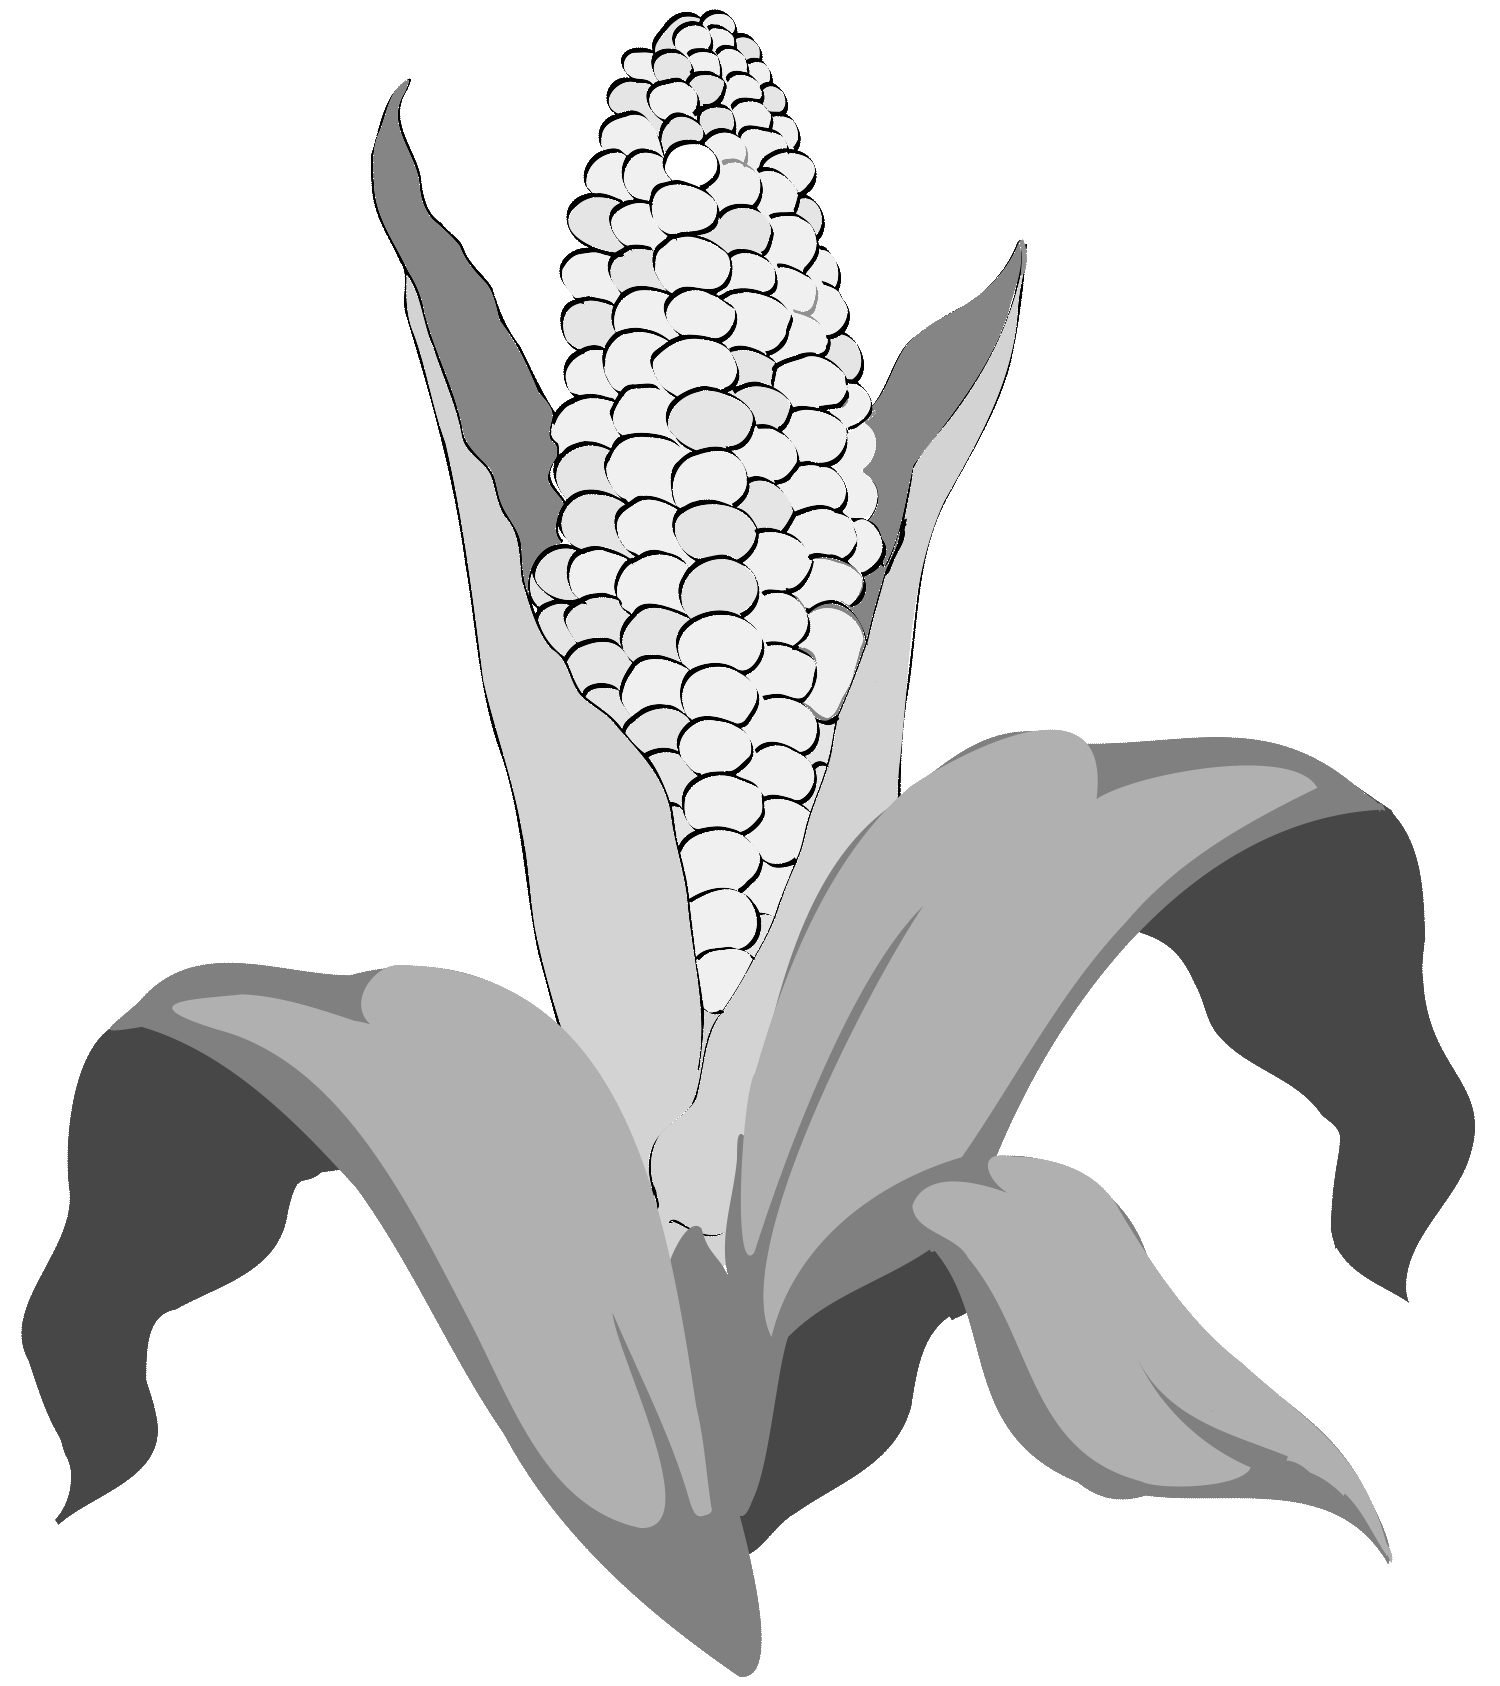 A ilustração apresenta uma espiga de milho, que simboliza o agronegócio, em conjunto com os princípios do Lean Thinking aplicados no setor agrícola. A ilustração foi criada por Nêio Mustafa, ilustrador.